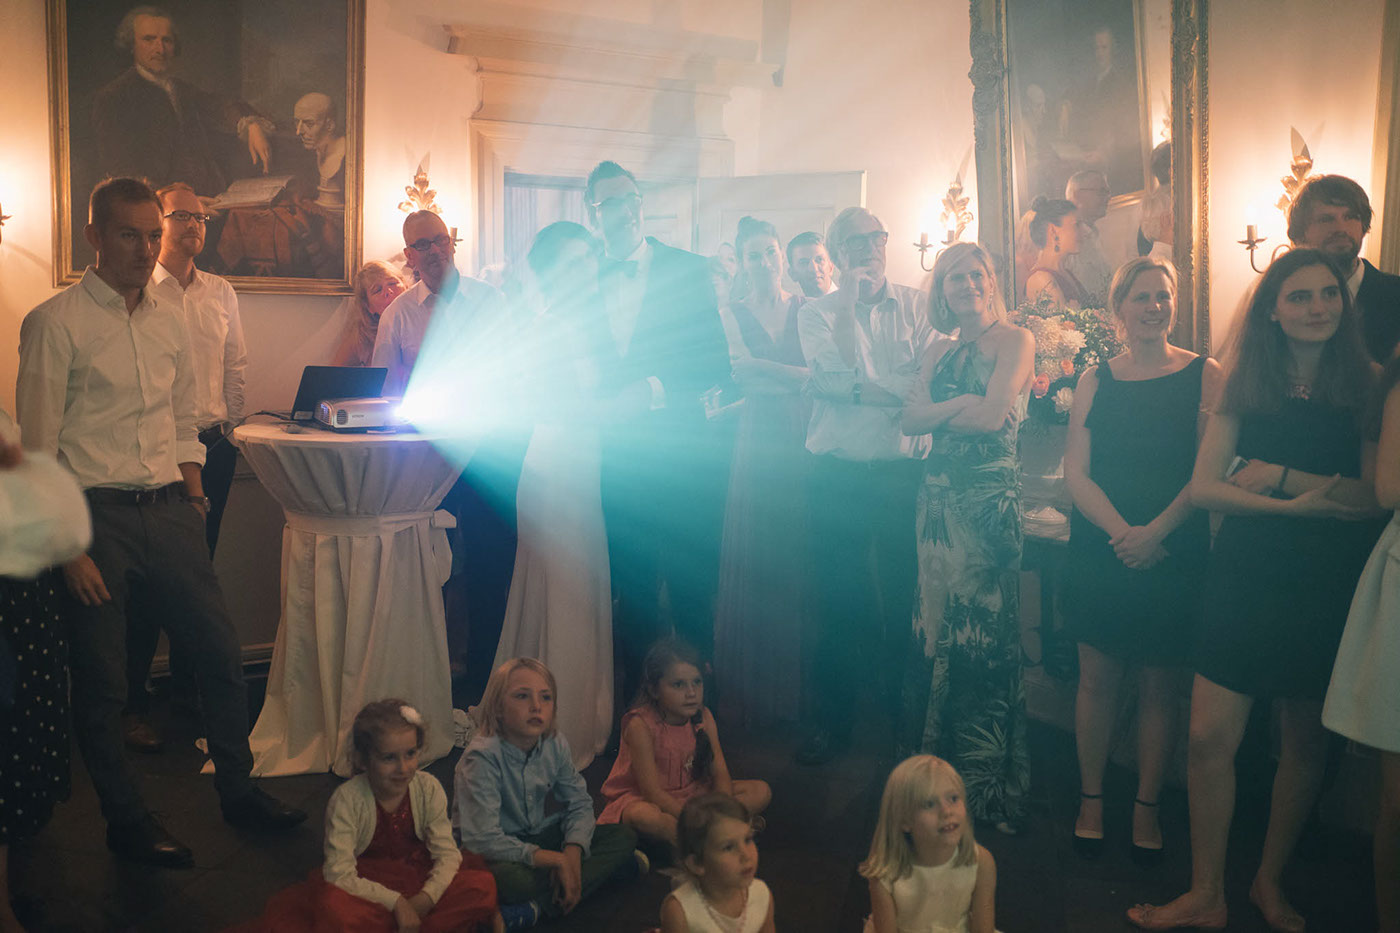 hannover niedersachsen hochzeitsfotograf hannover Hochzeit hochzeitsfotograf Hochzeitsfotografie wedding Wedding Photography norddeutschland